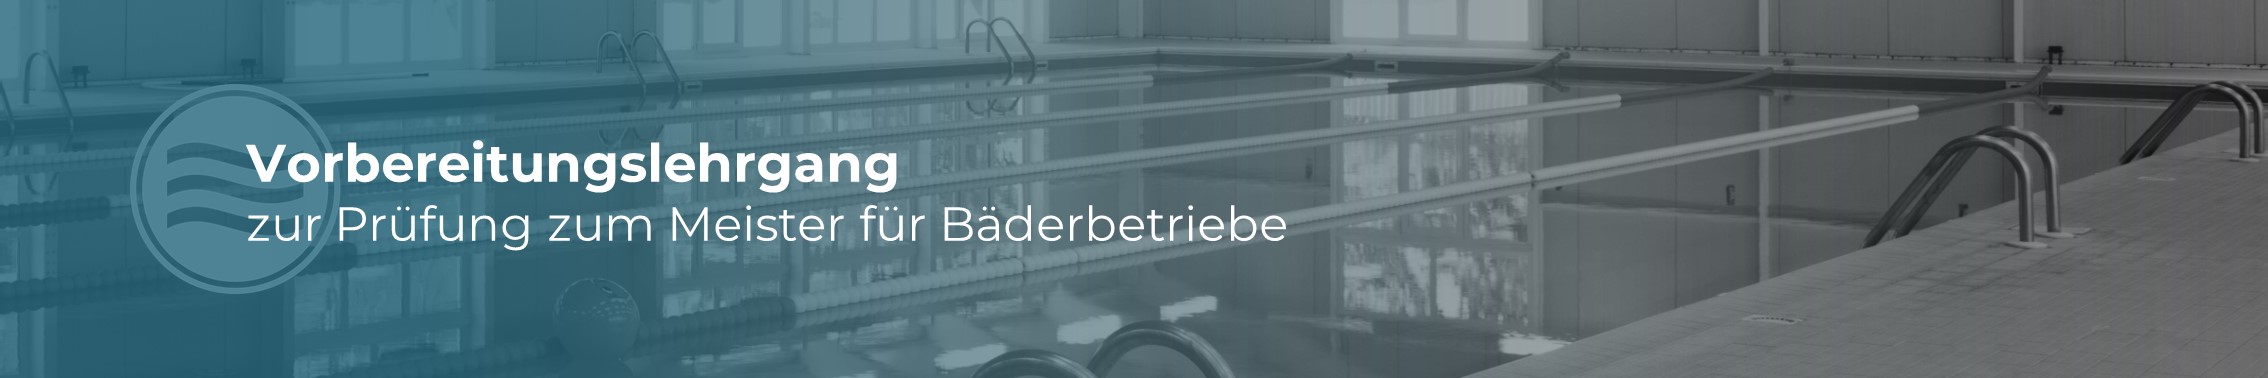 Meiter für Bäderbetriebe - Baederfachschule e. V. Rabenberg Sachsen